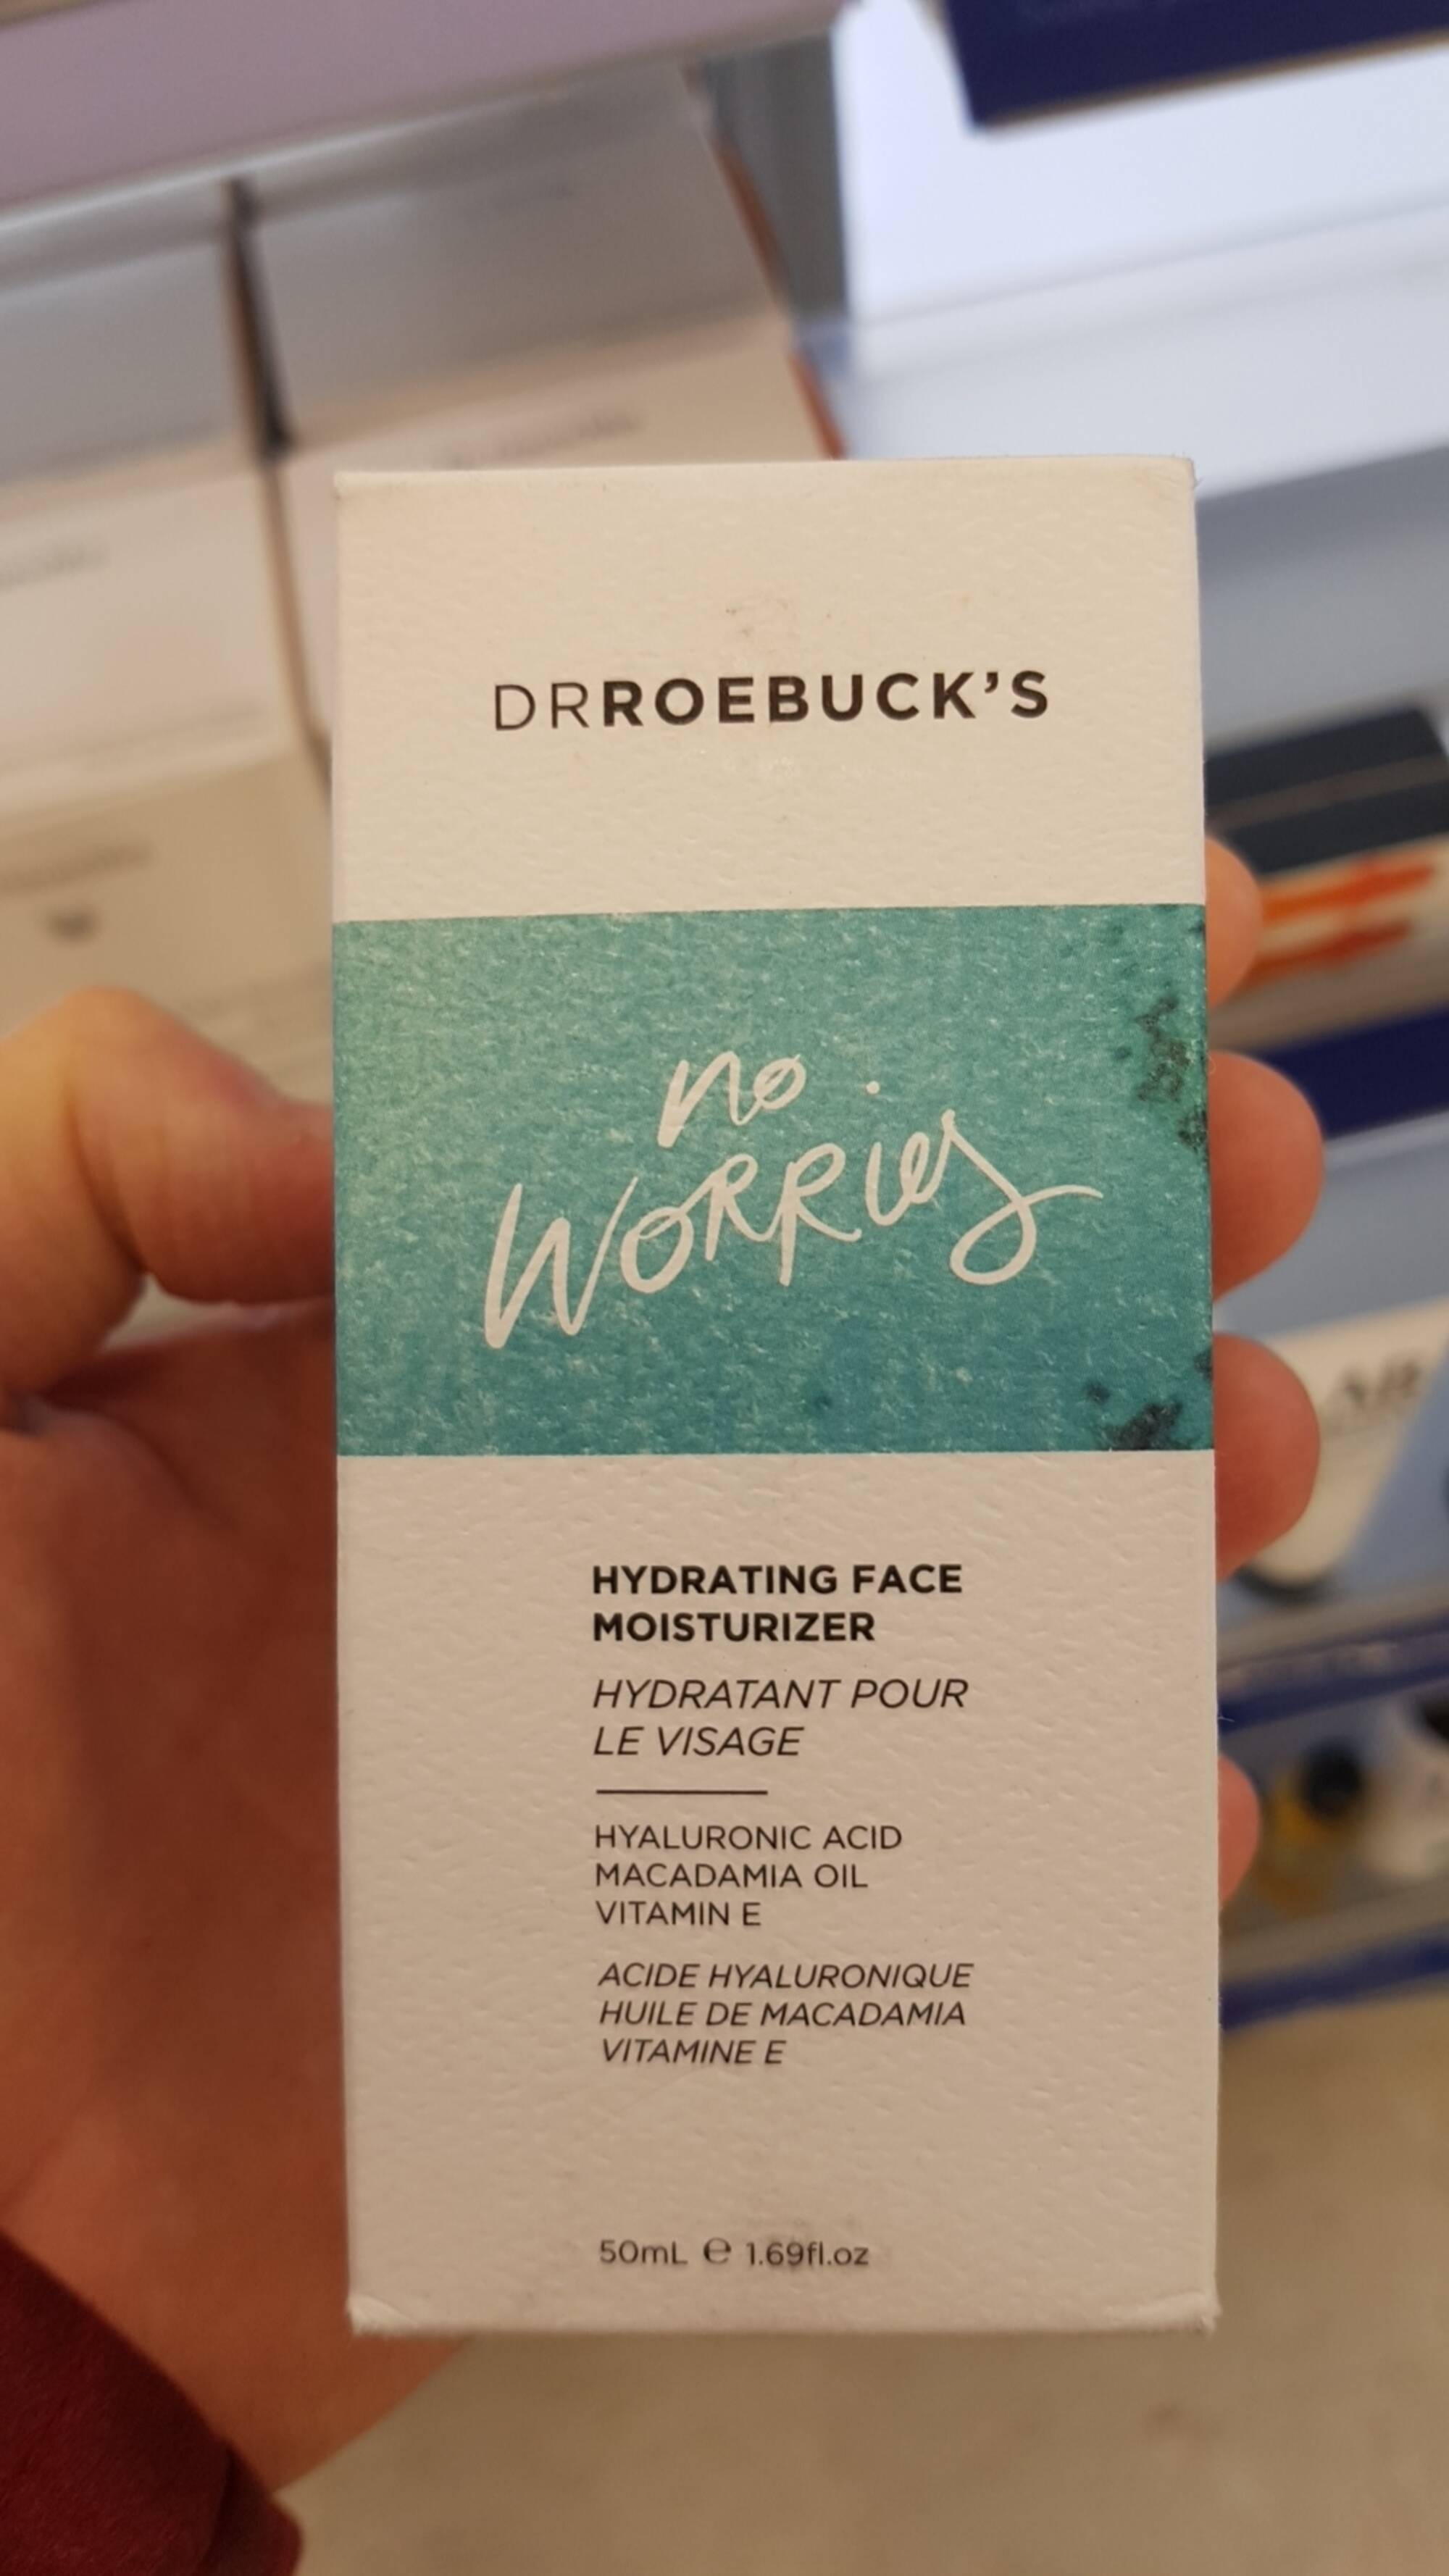 DR ROEBUCK'S - Hydratant pour le visage